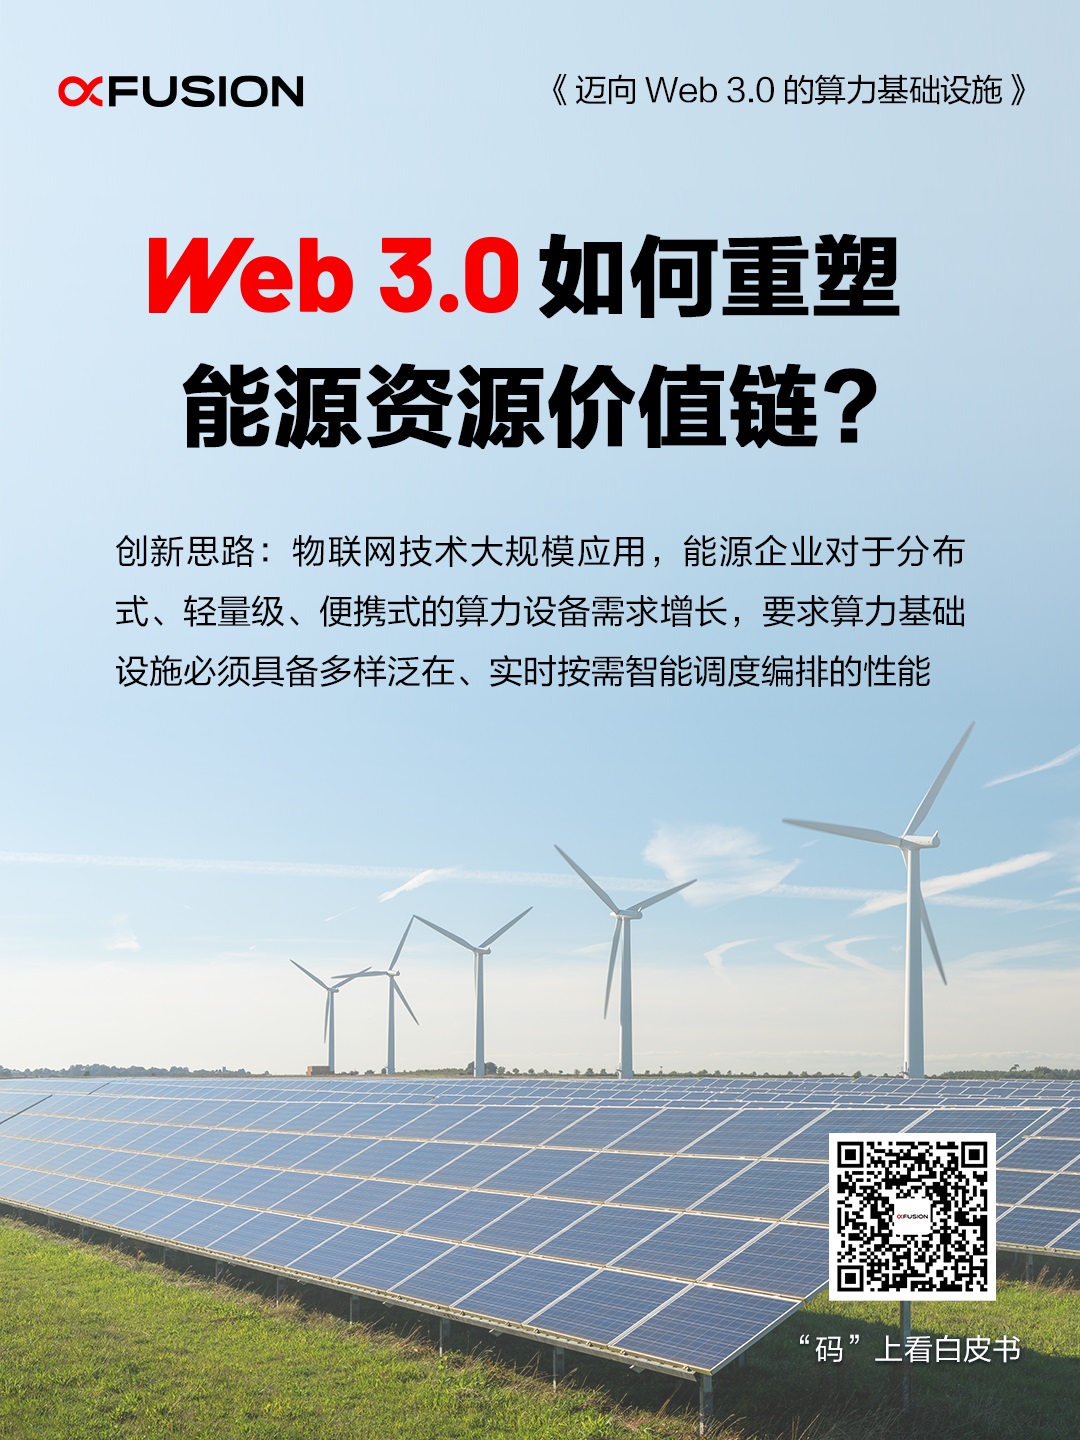 Web 3.0如何重塑能源资源价值链？